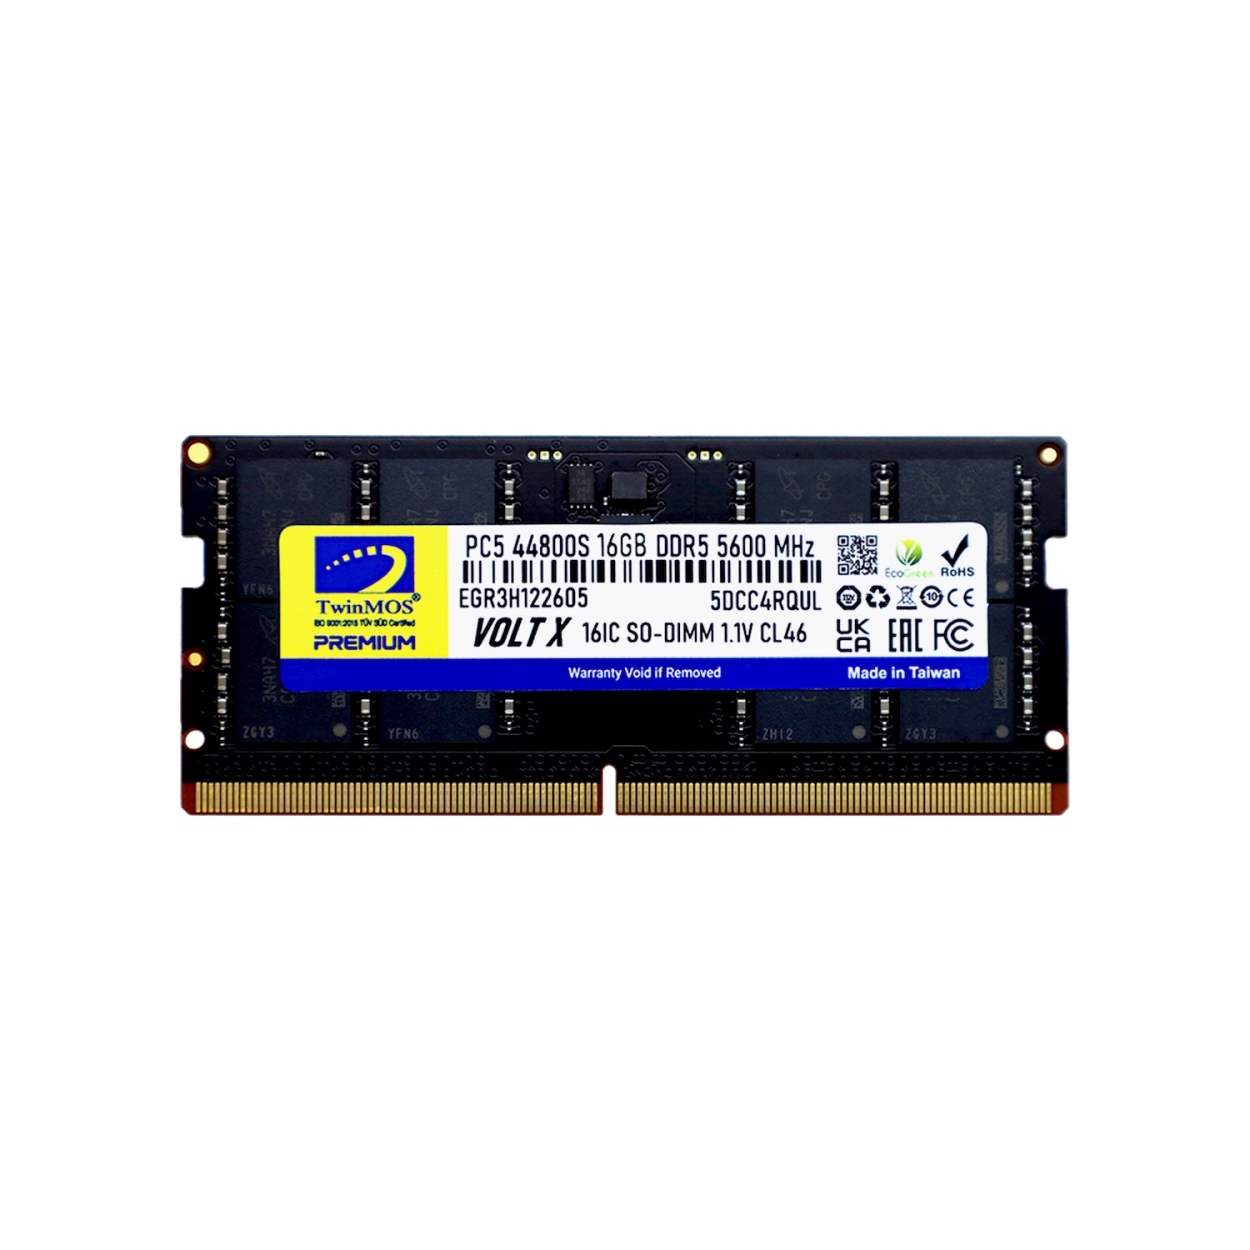 TWINMOS 16GB 5600MHz DDR5 TMD516GB5600S46 NOTEBOOK RAM